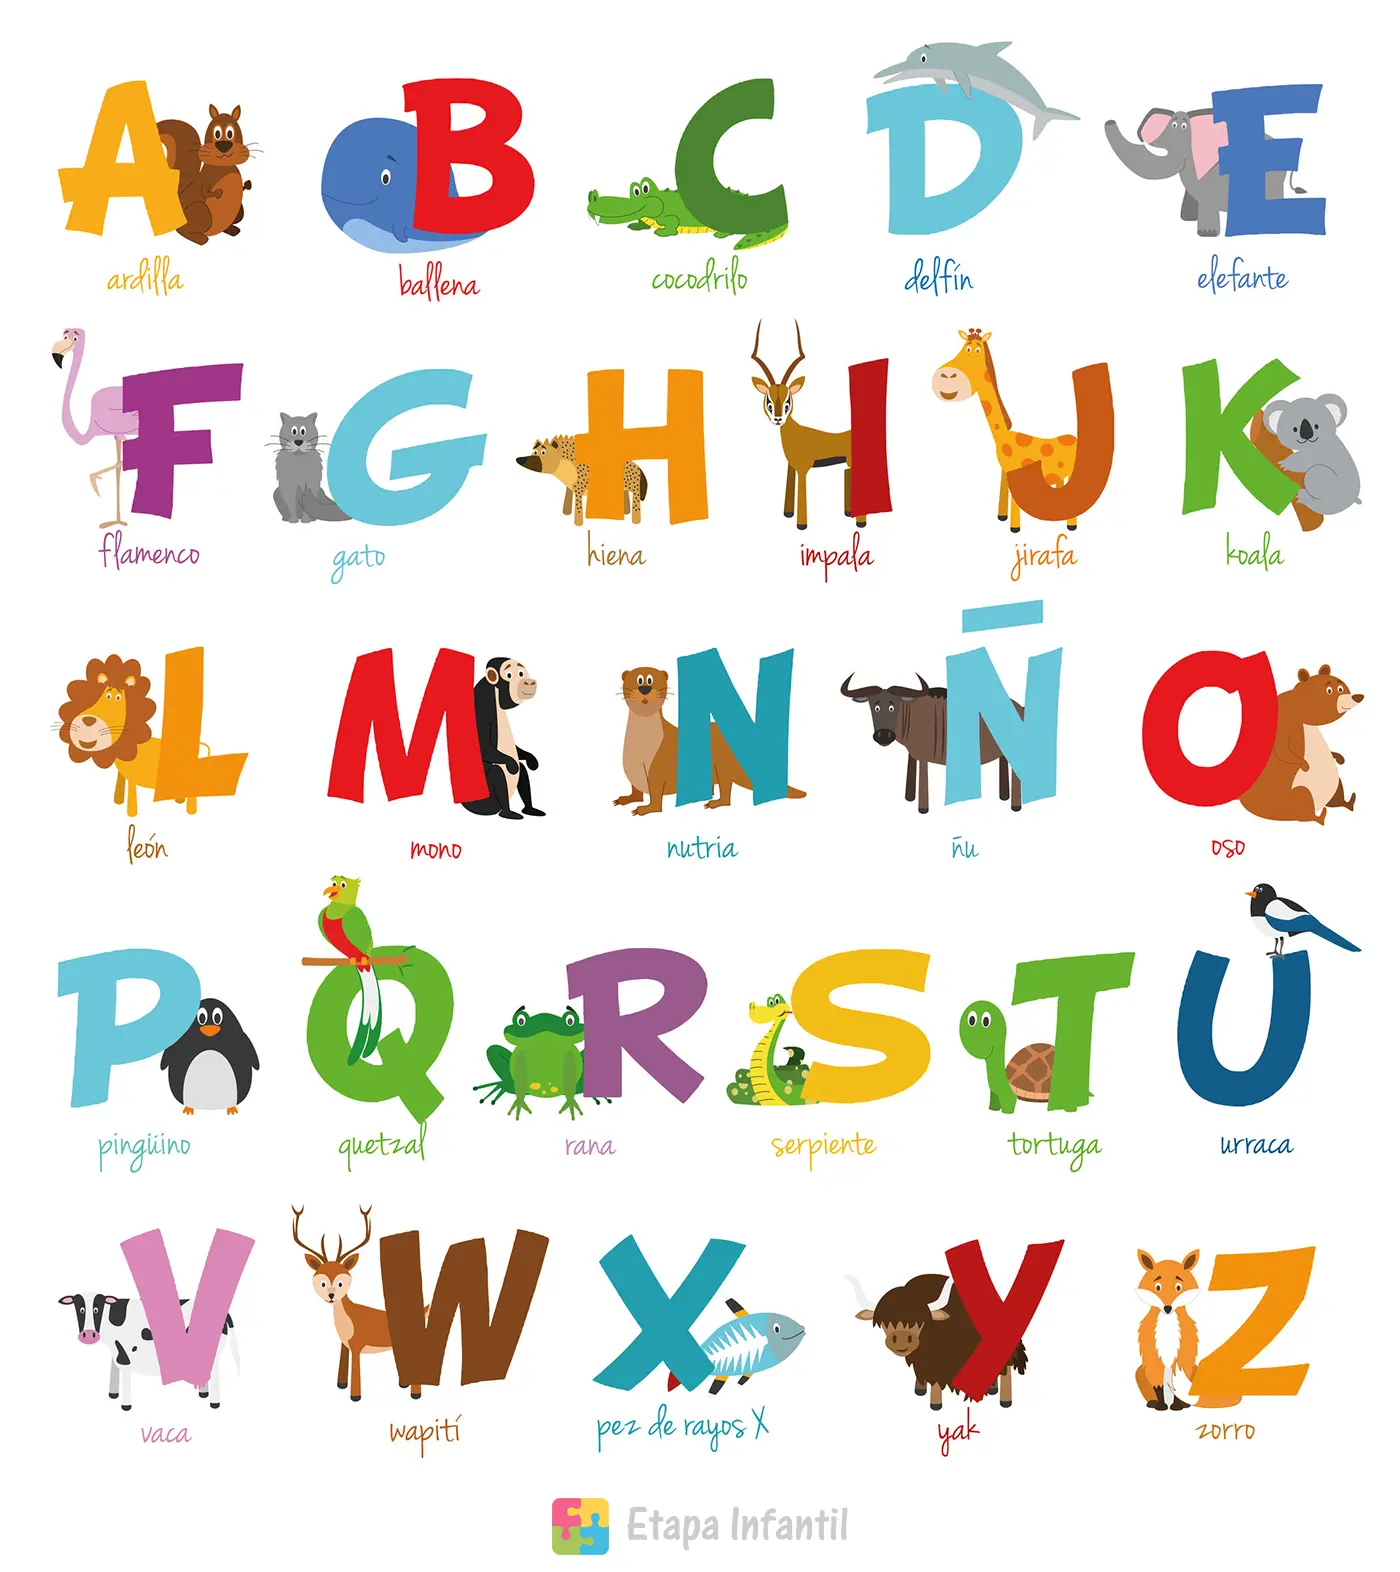 Enseñar de forma divertida el abecedario a un niño - Etapa Infantil